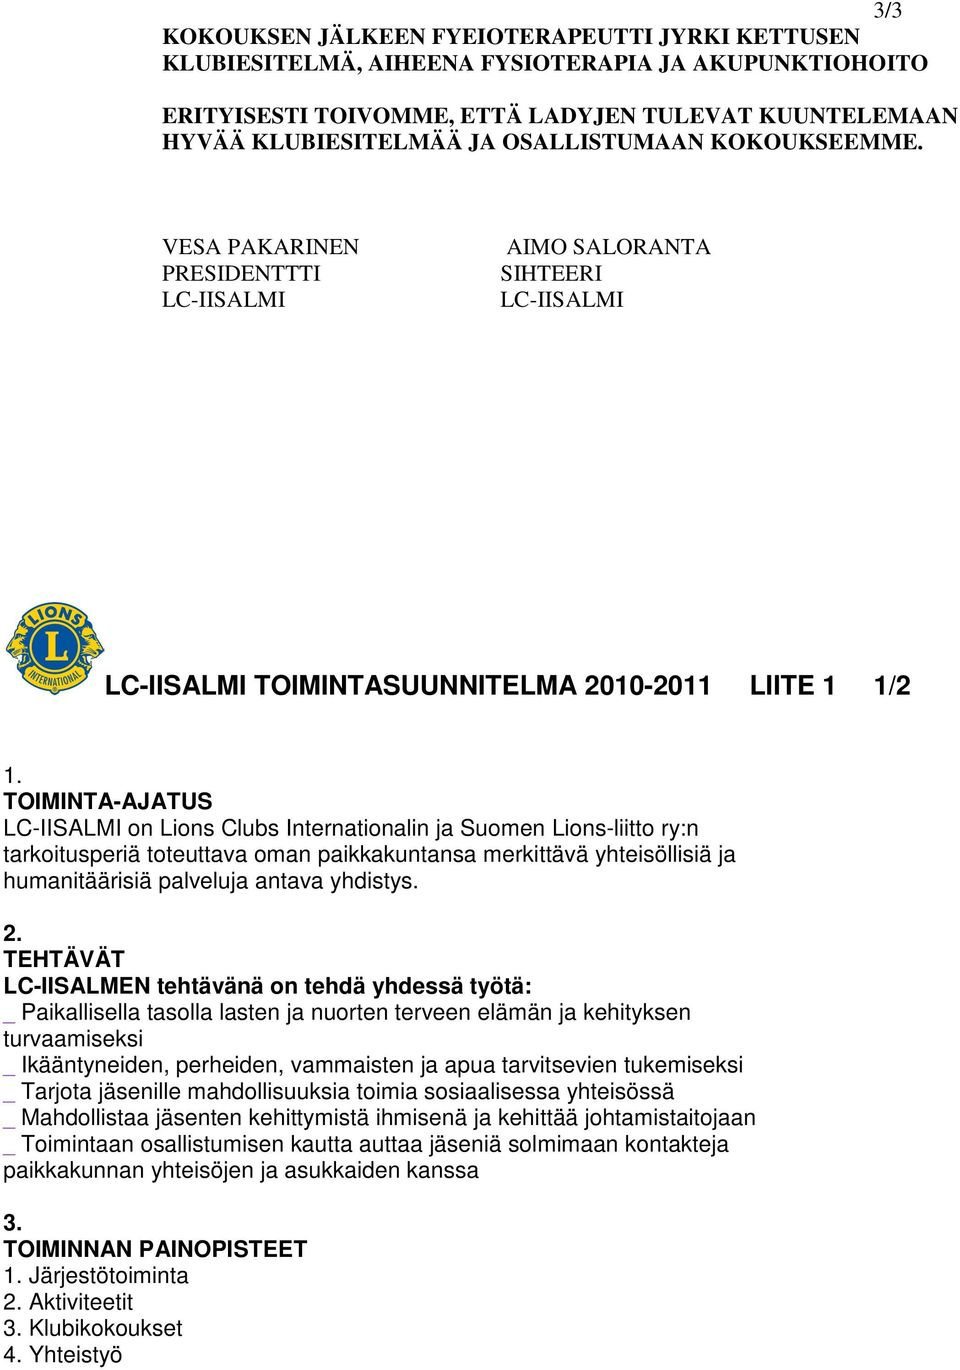 TOIMINTA-AJATUS LC-IISALMI on Lions Clubs Internationalin ja Suomen Lions-liitto ry:n tarkoitusperiä toteuttava oman paikkakuntansa merkittävä yhteisöllisiä ja humanitäärisiä palveluja antava